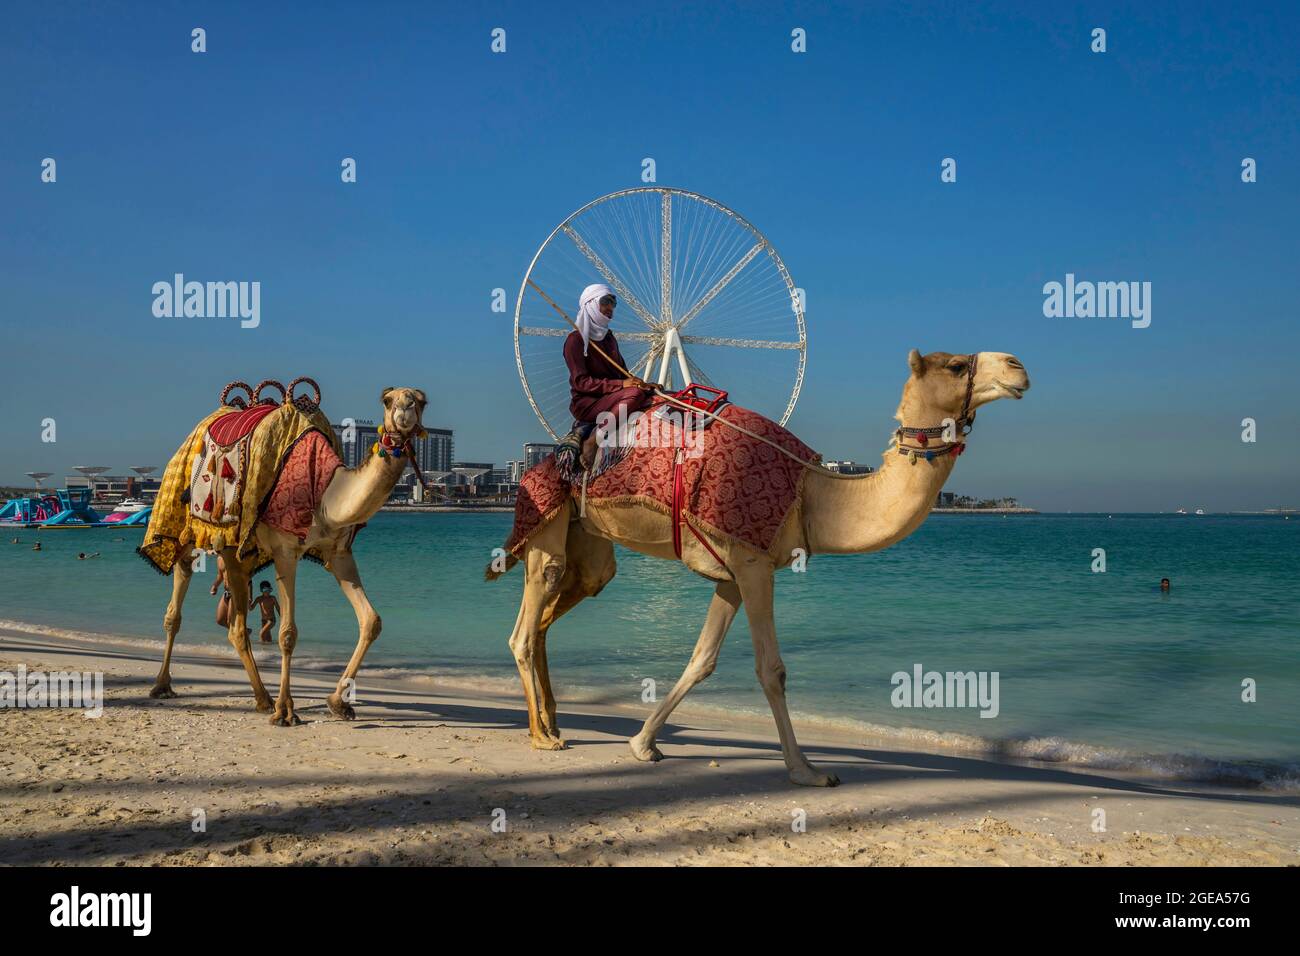 Un bédouin passe sur son chameau en face d'Ain Dubai, la plus grande roue ferris du monde sur la plage de Jumeirah à Dubaï. Banque D'Images